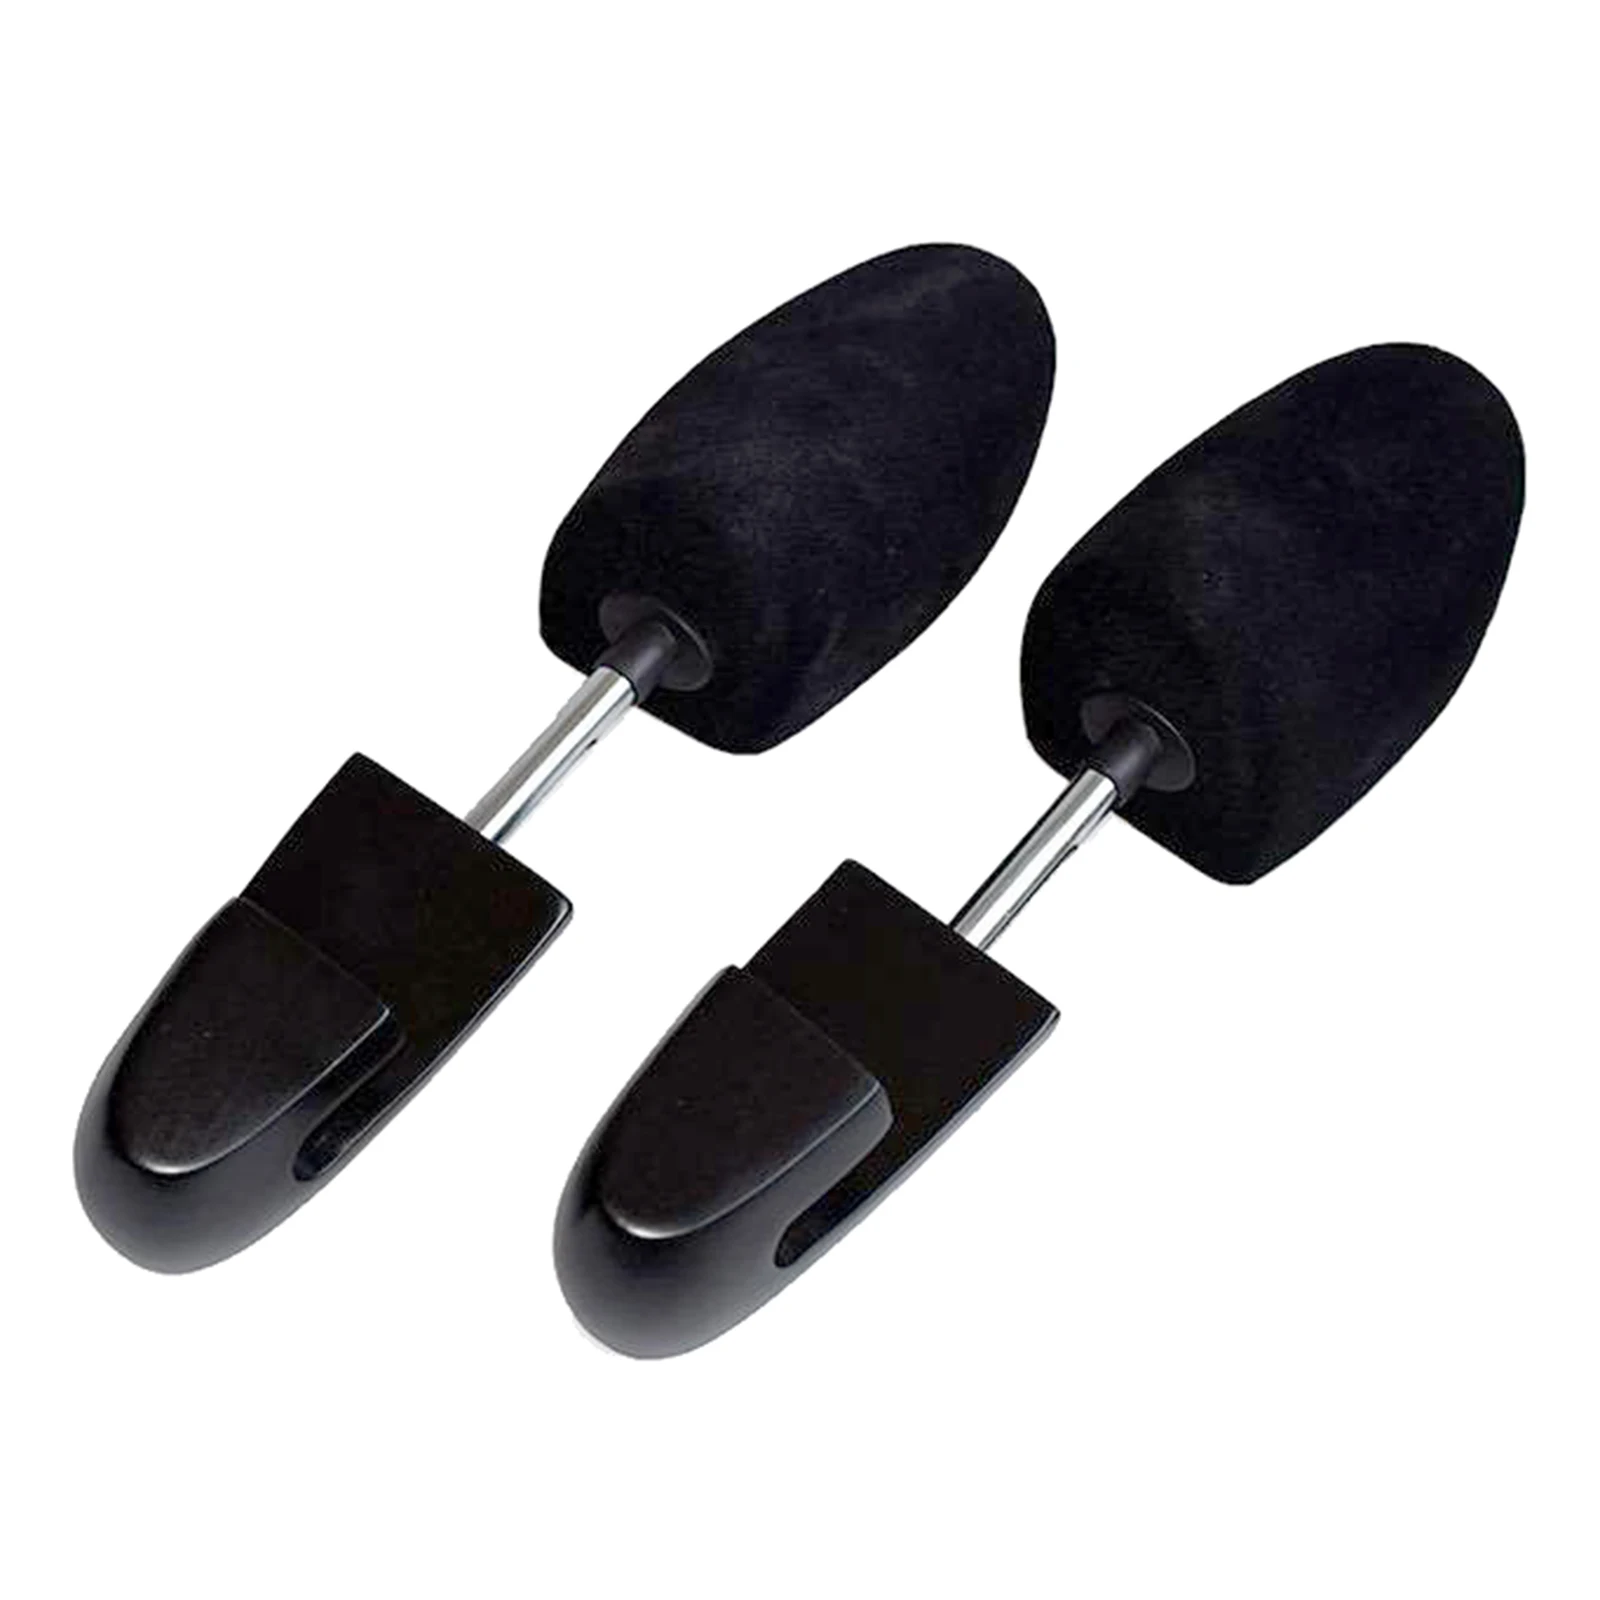 Durable Shoe Stretcher Stretching Shoe Widener Wide Adjustable Expander Plastic Adjustable Shoe tree Brace Wrinkle Removal